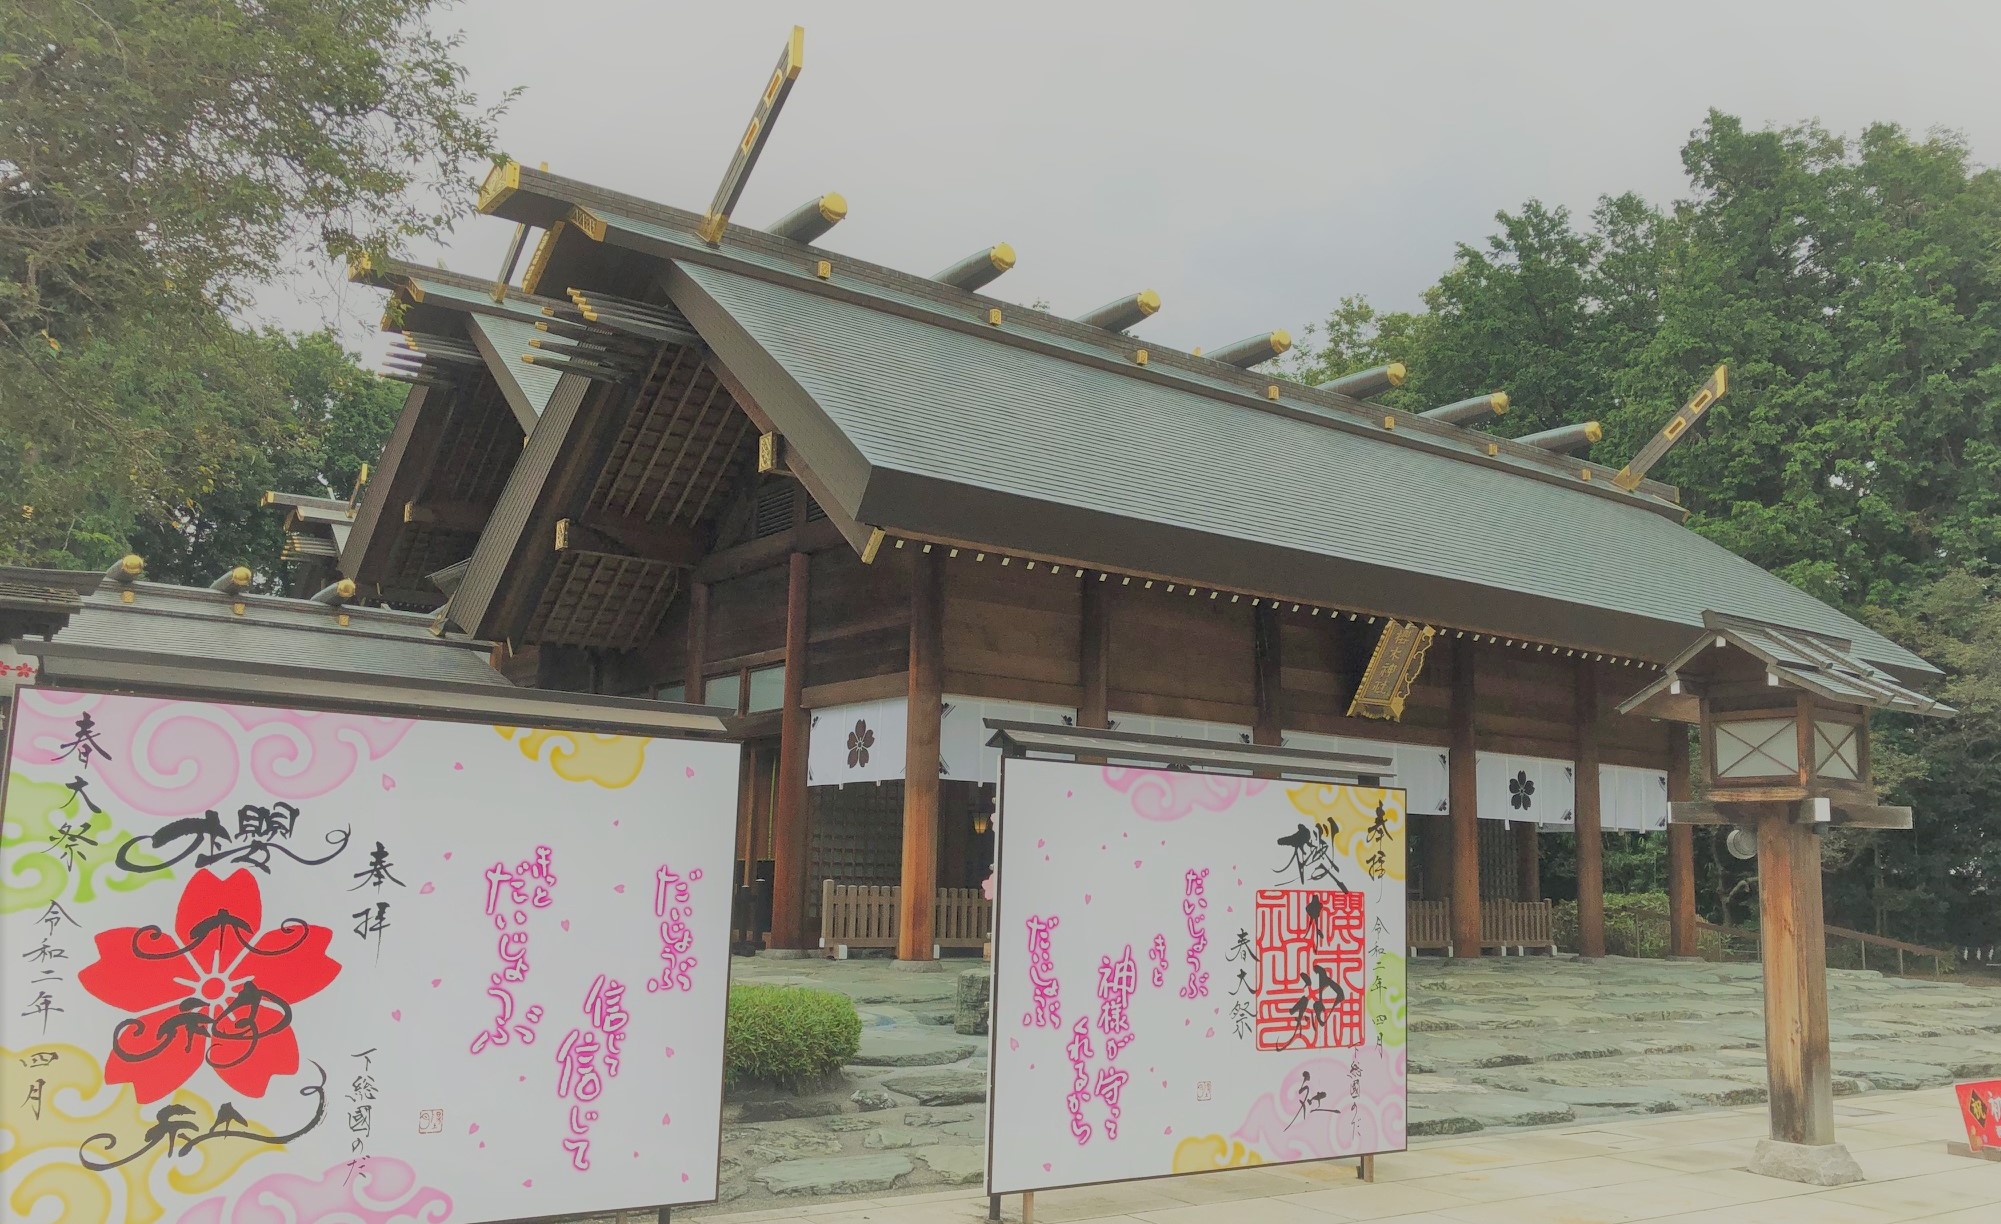 通年桜が楽しめるパワースポット。野田市最古の櫻木神社に夏詣。茅の輪くぐりで運気アップ